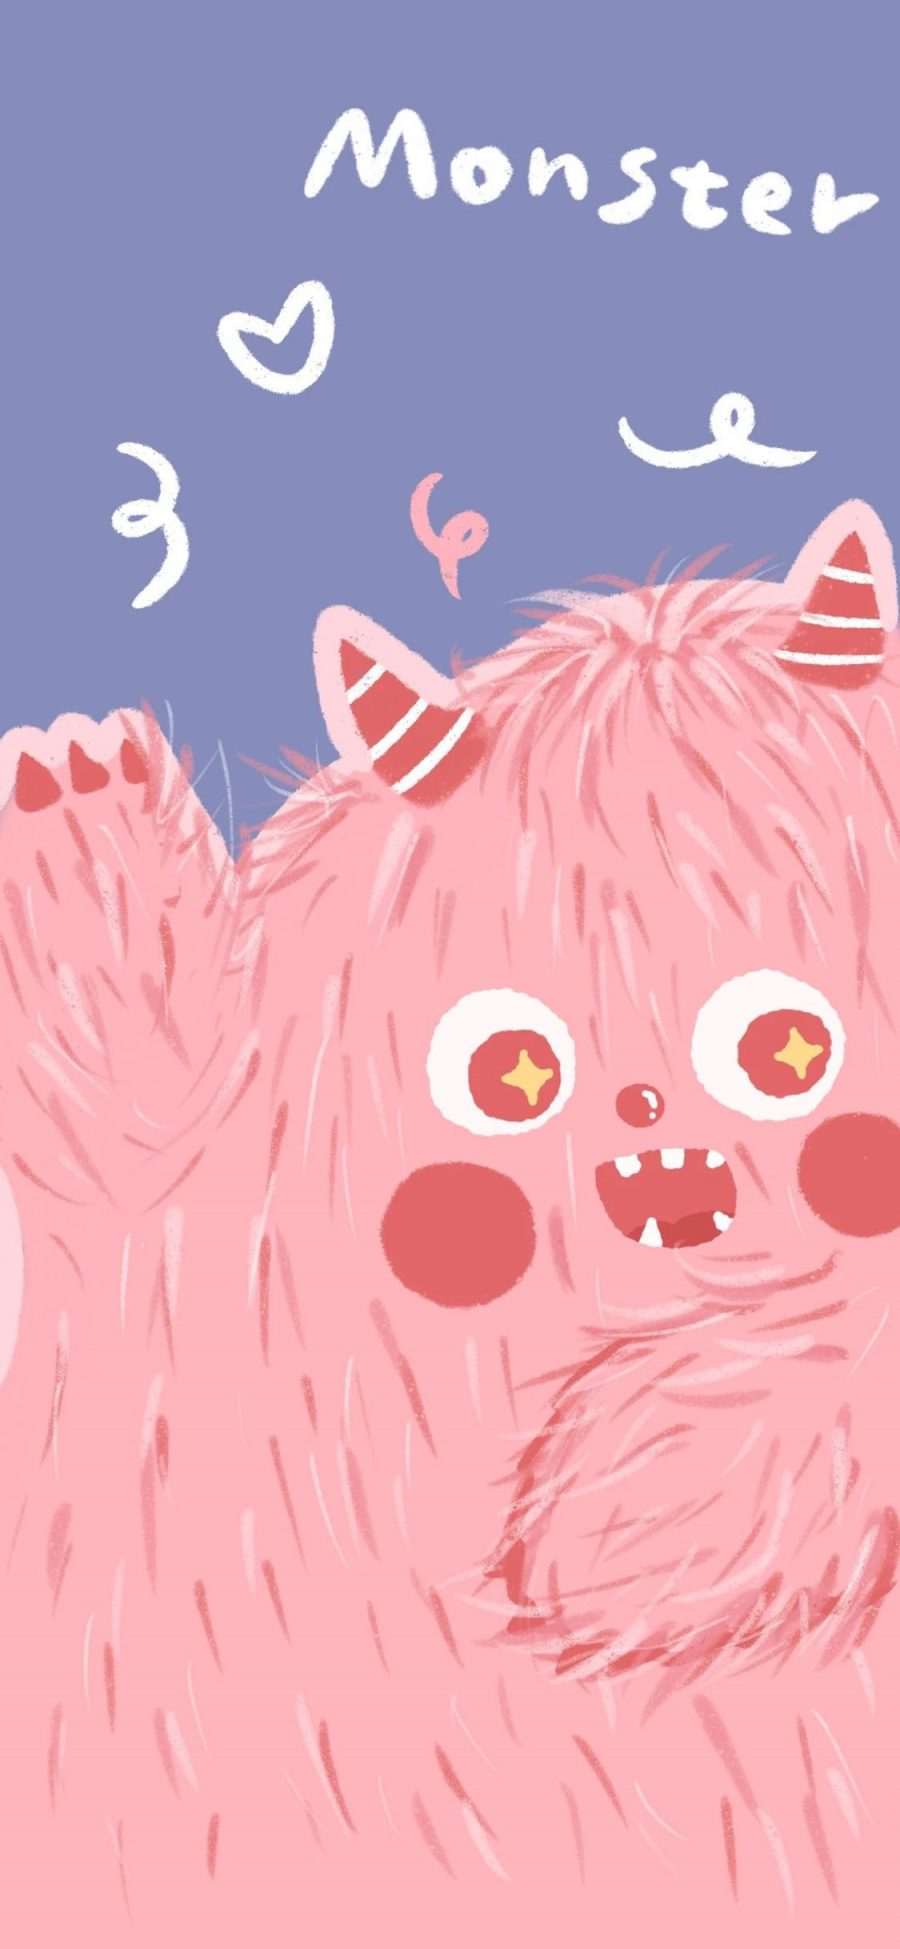 [2436×1125]小怪兽 monster 粉 卡通 可爱 苹果手机动漫壁纸图片